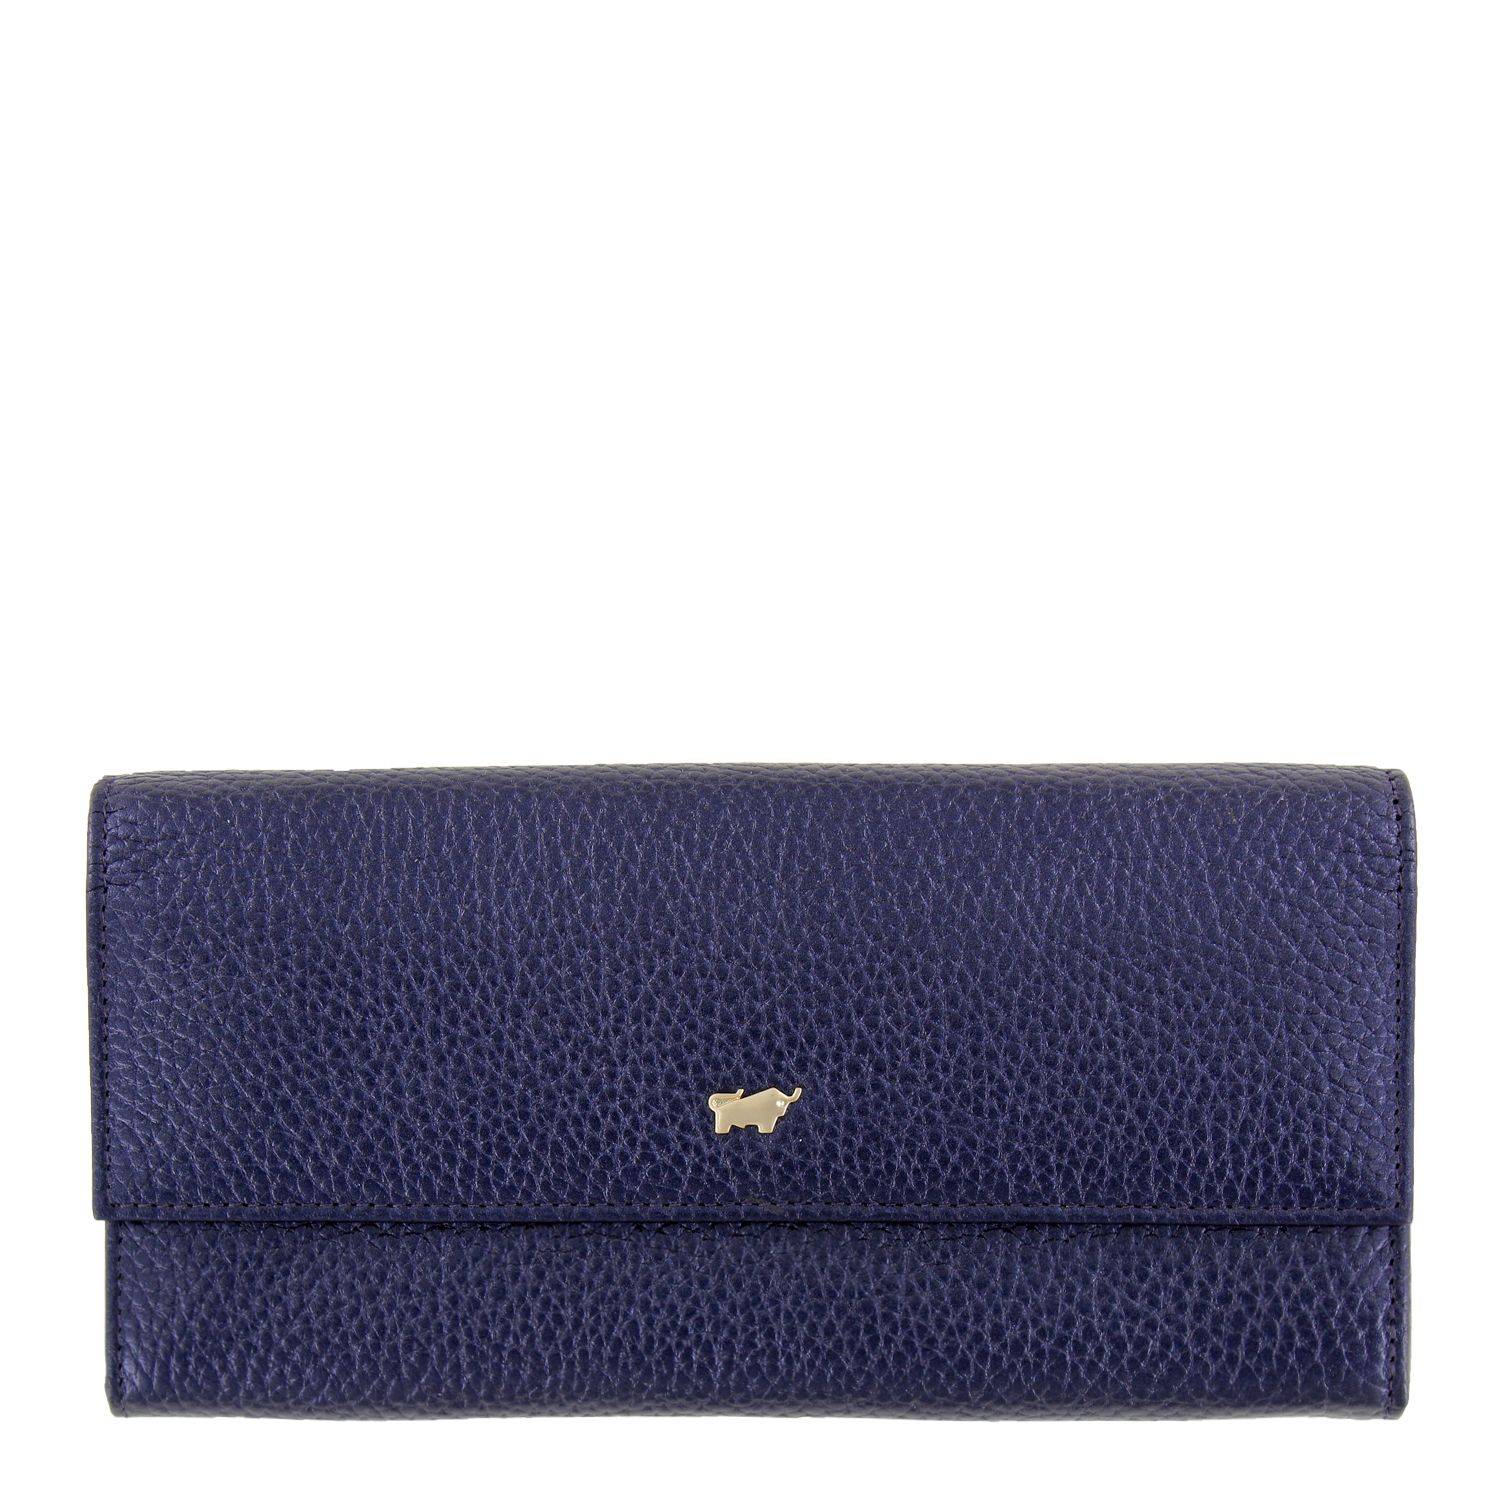 Кошелек Braun Buffel ASCOLI Wallet L 12CS 11458, цвет синий, размер ONE SIZE